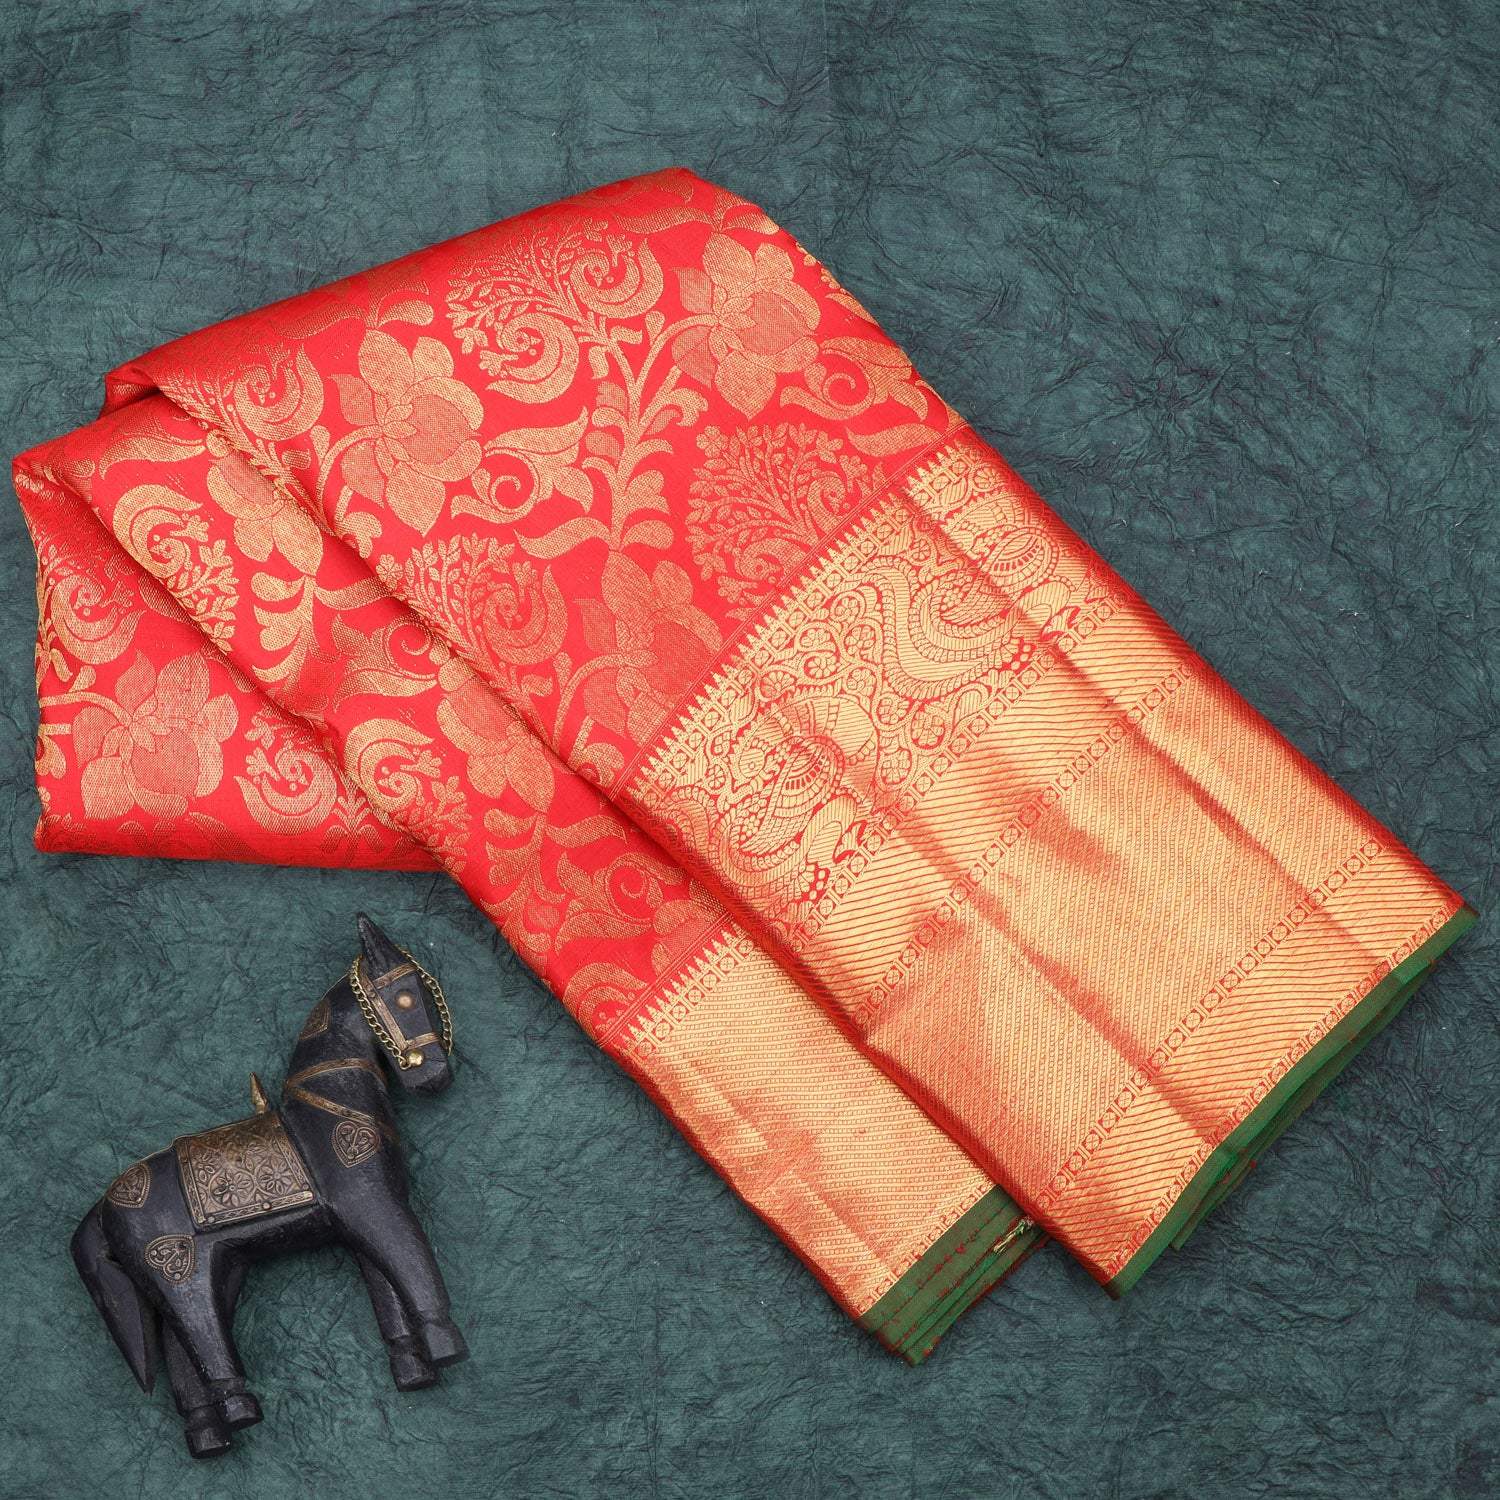 Bright Red Kanjivaram Silk Saree With Floral Motif Pattern - Singhania's